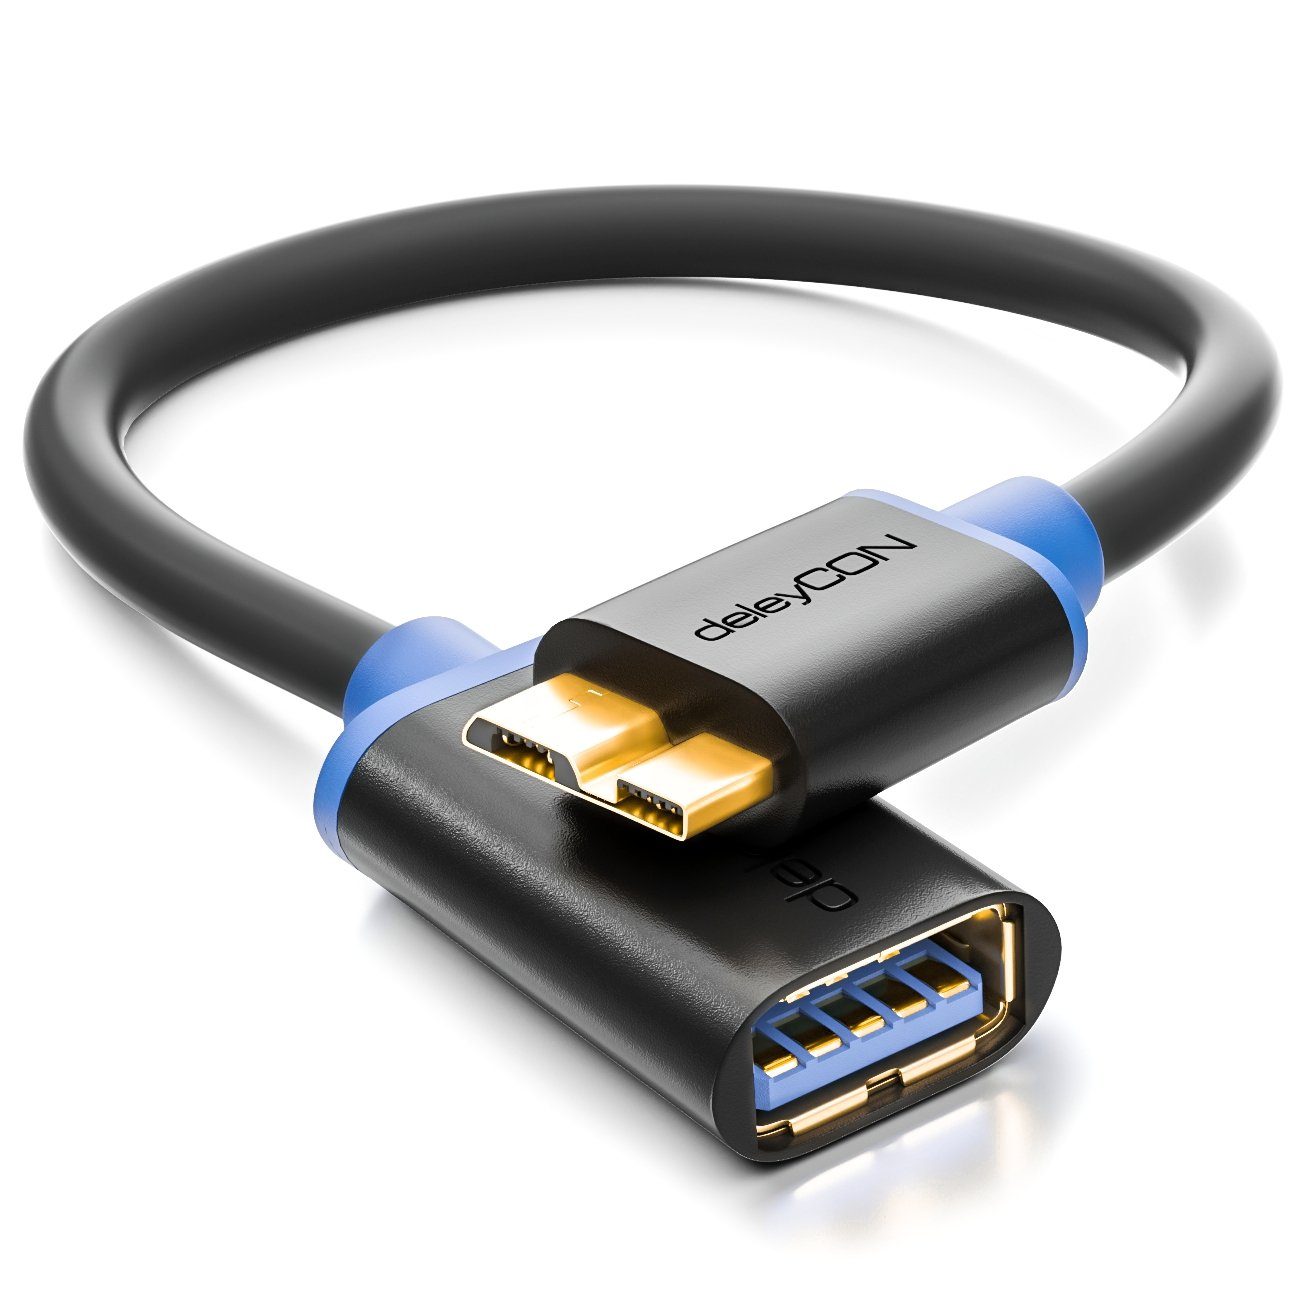 deleyCON deleyCON 0,2m USB 3.0 OTG Adapter für Handy/Smartphone/Tablet - Micro USB-Kabel